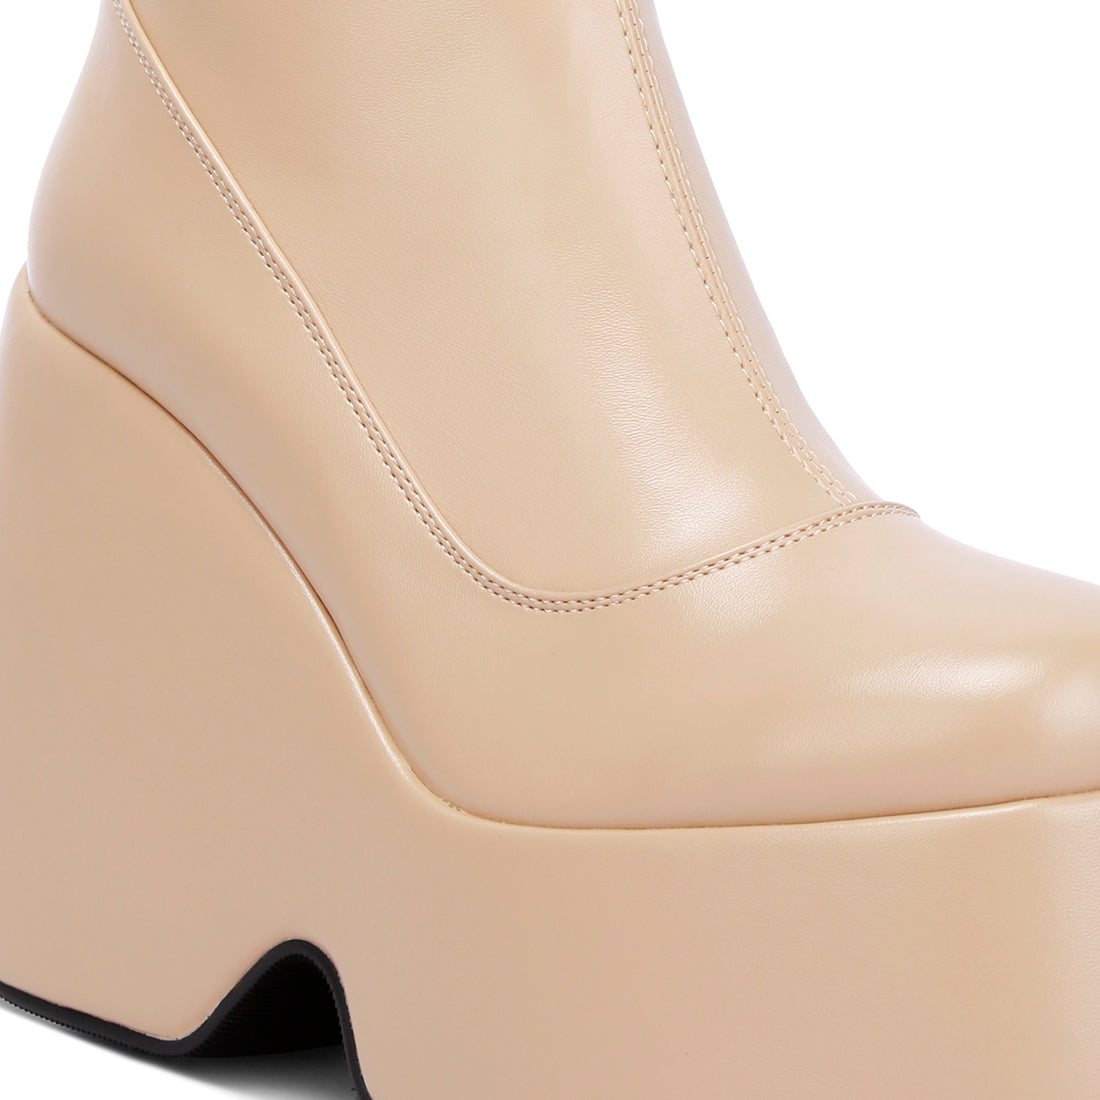 high platform ankle boots#color_beige